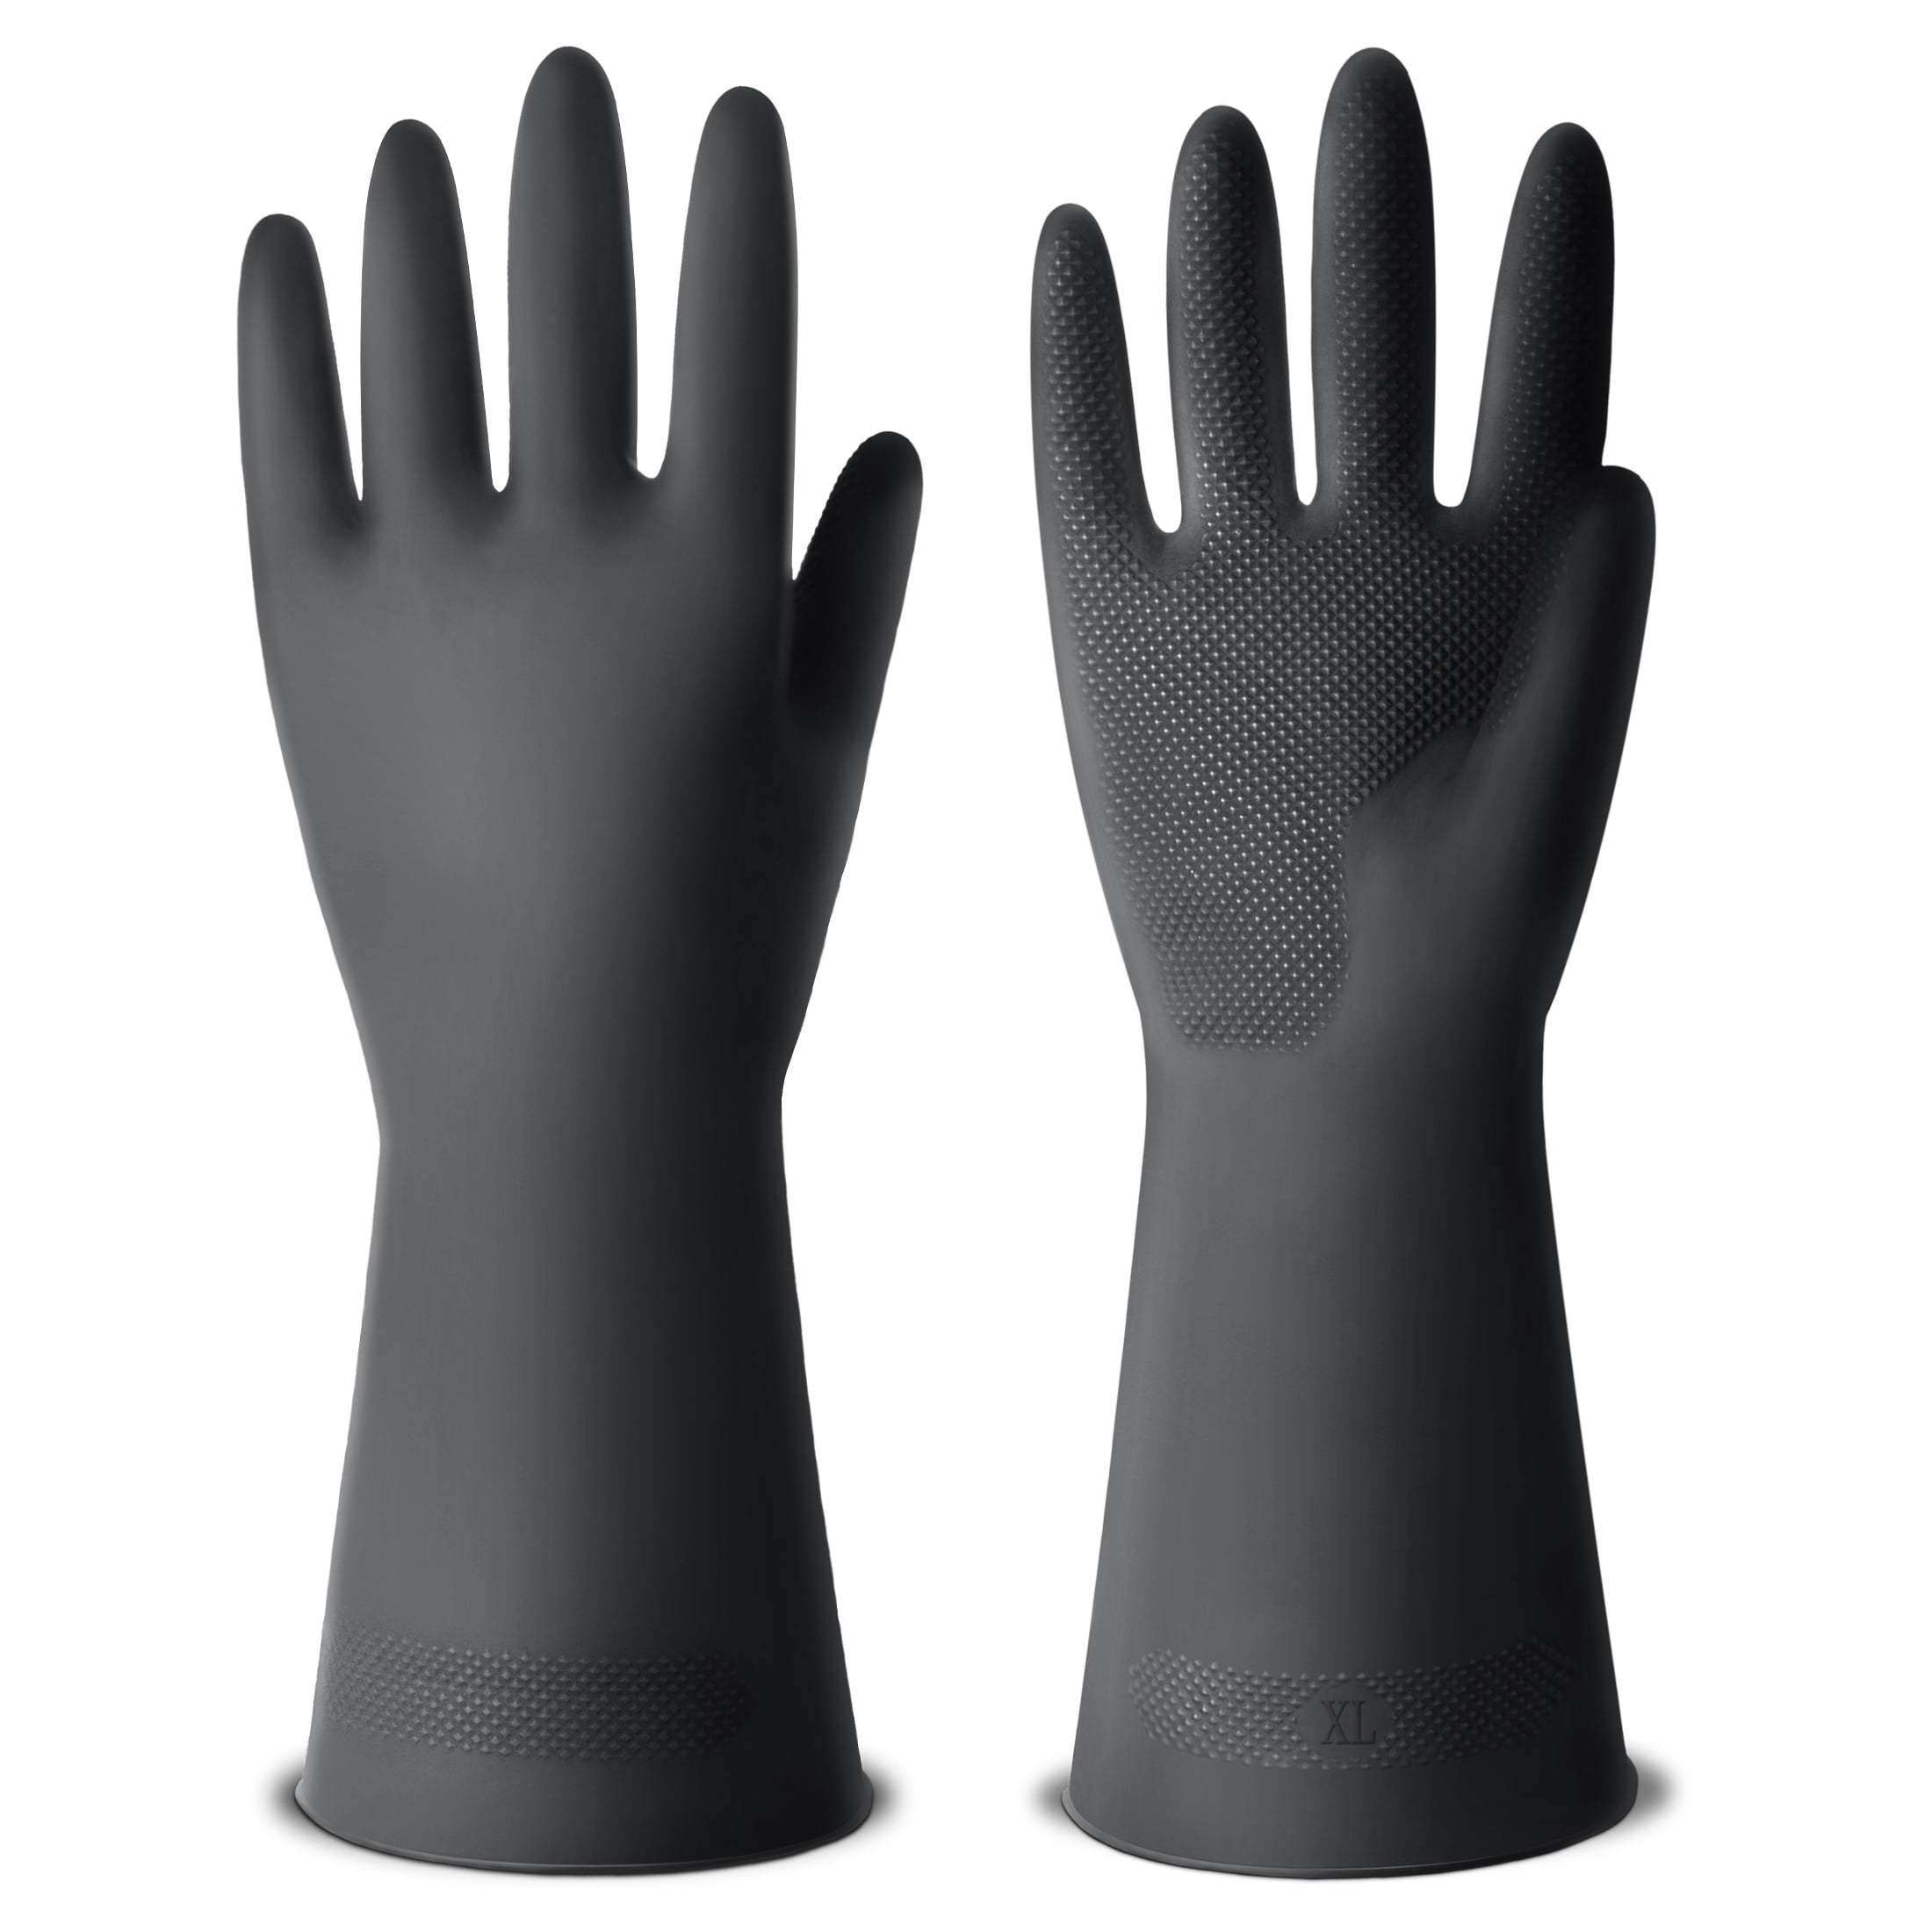 CleanGreen Microfiber Dusting Gloves, Pair